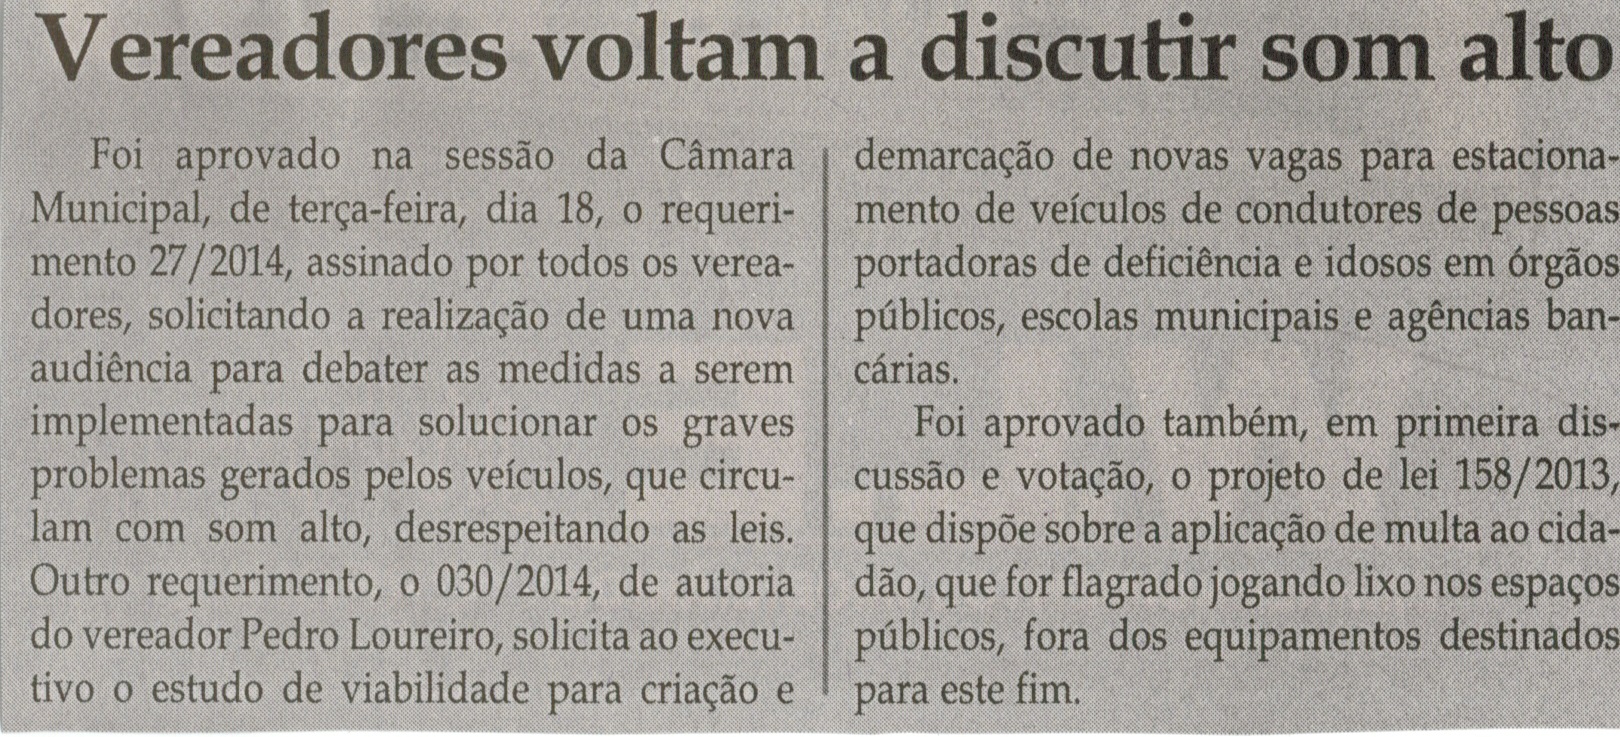 Vereadores voltam  a discutir som alto. Jornal Correio da Cidade, Conselheiro Lafaiete, 22 mar. 2014, p. C1.